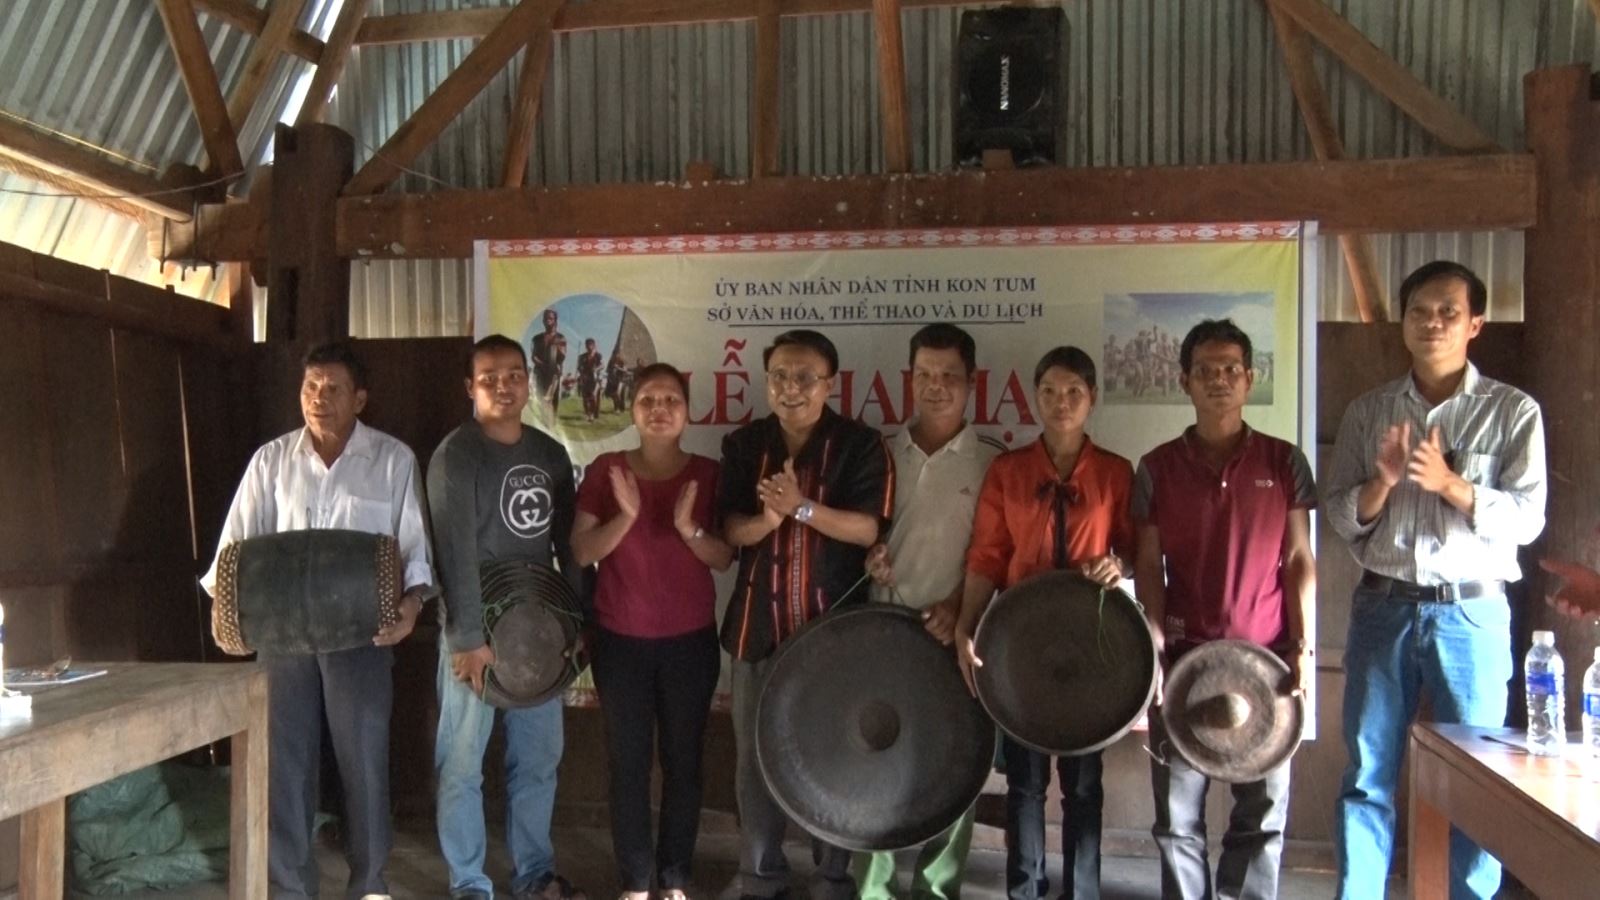 Tổ chức lớp truyền dạy cồng chiêng, xoang trong cộng đồng dân tộc Rơ Mâm làng Le xã Mô Rai